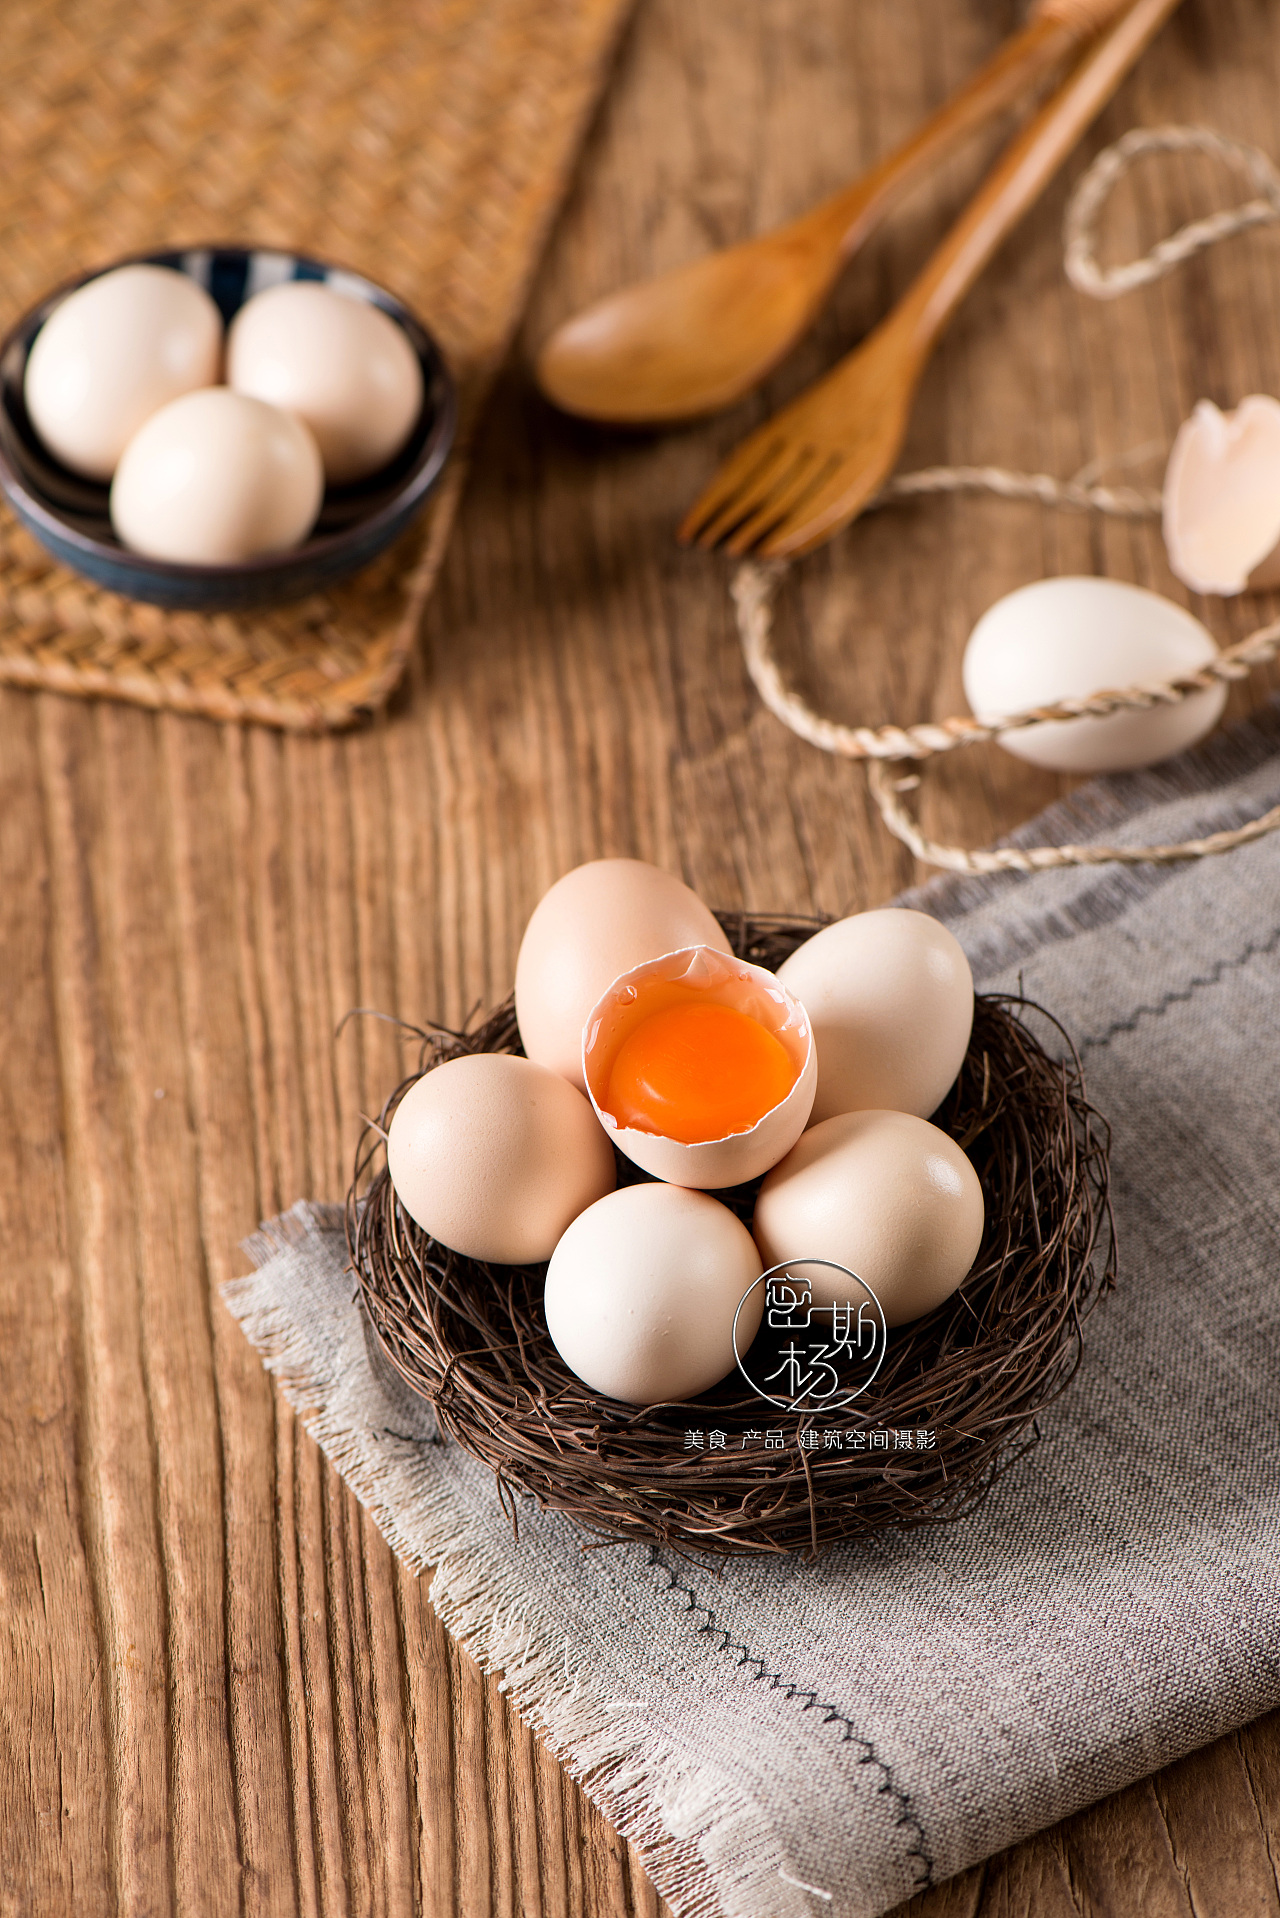 培根炒鸡蛋,培根炒鸡蛋的家常做法 - 美食杰培根炒鸡蛋做法大全